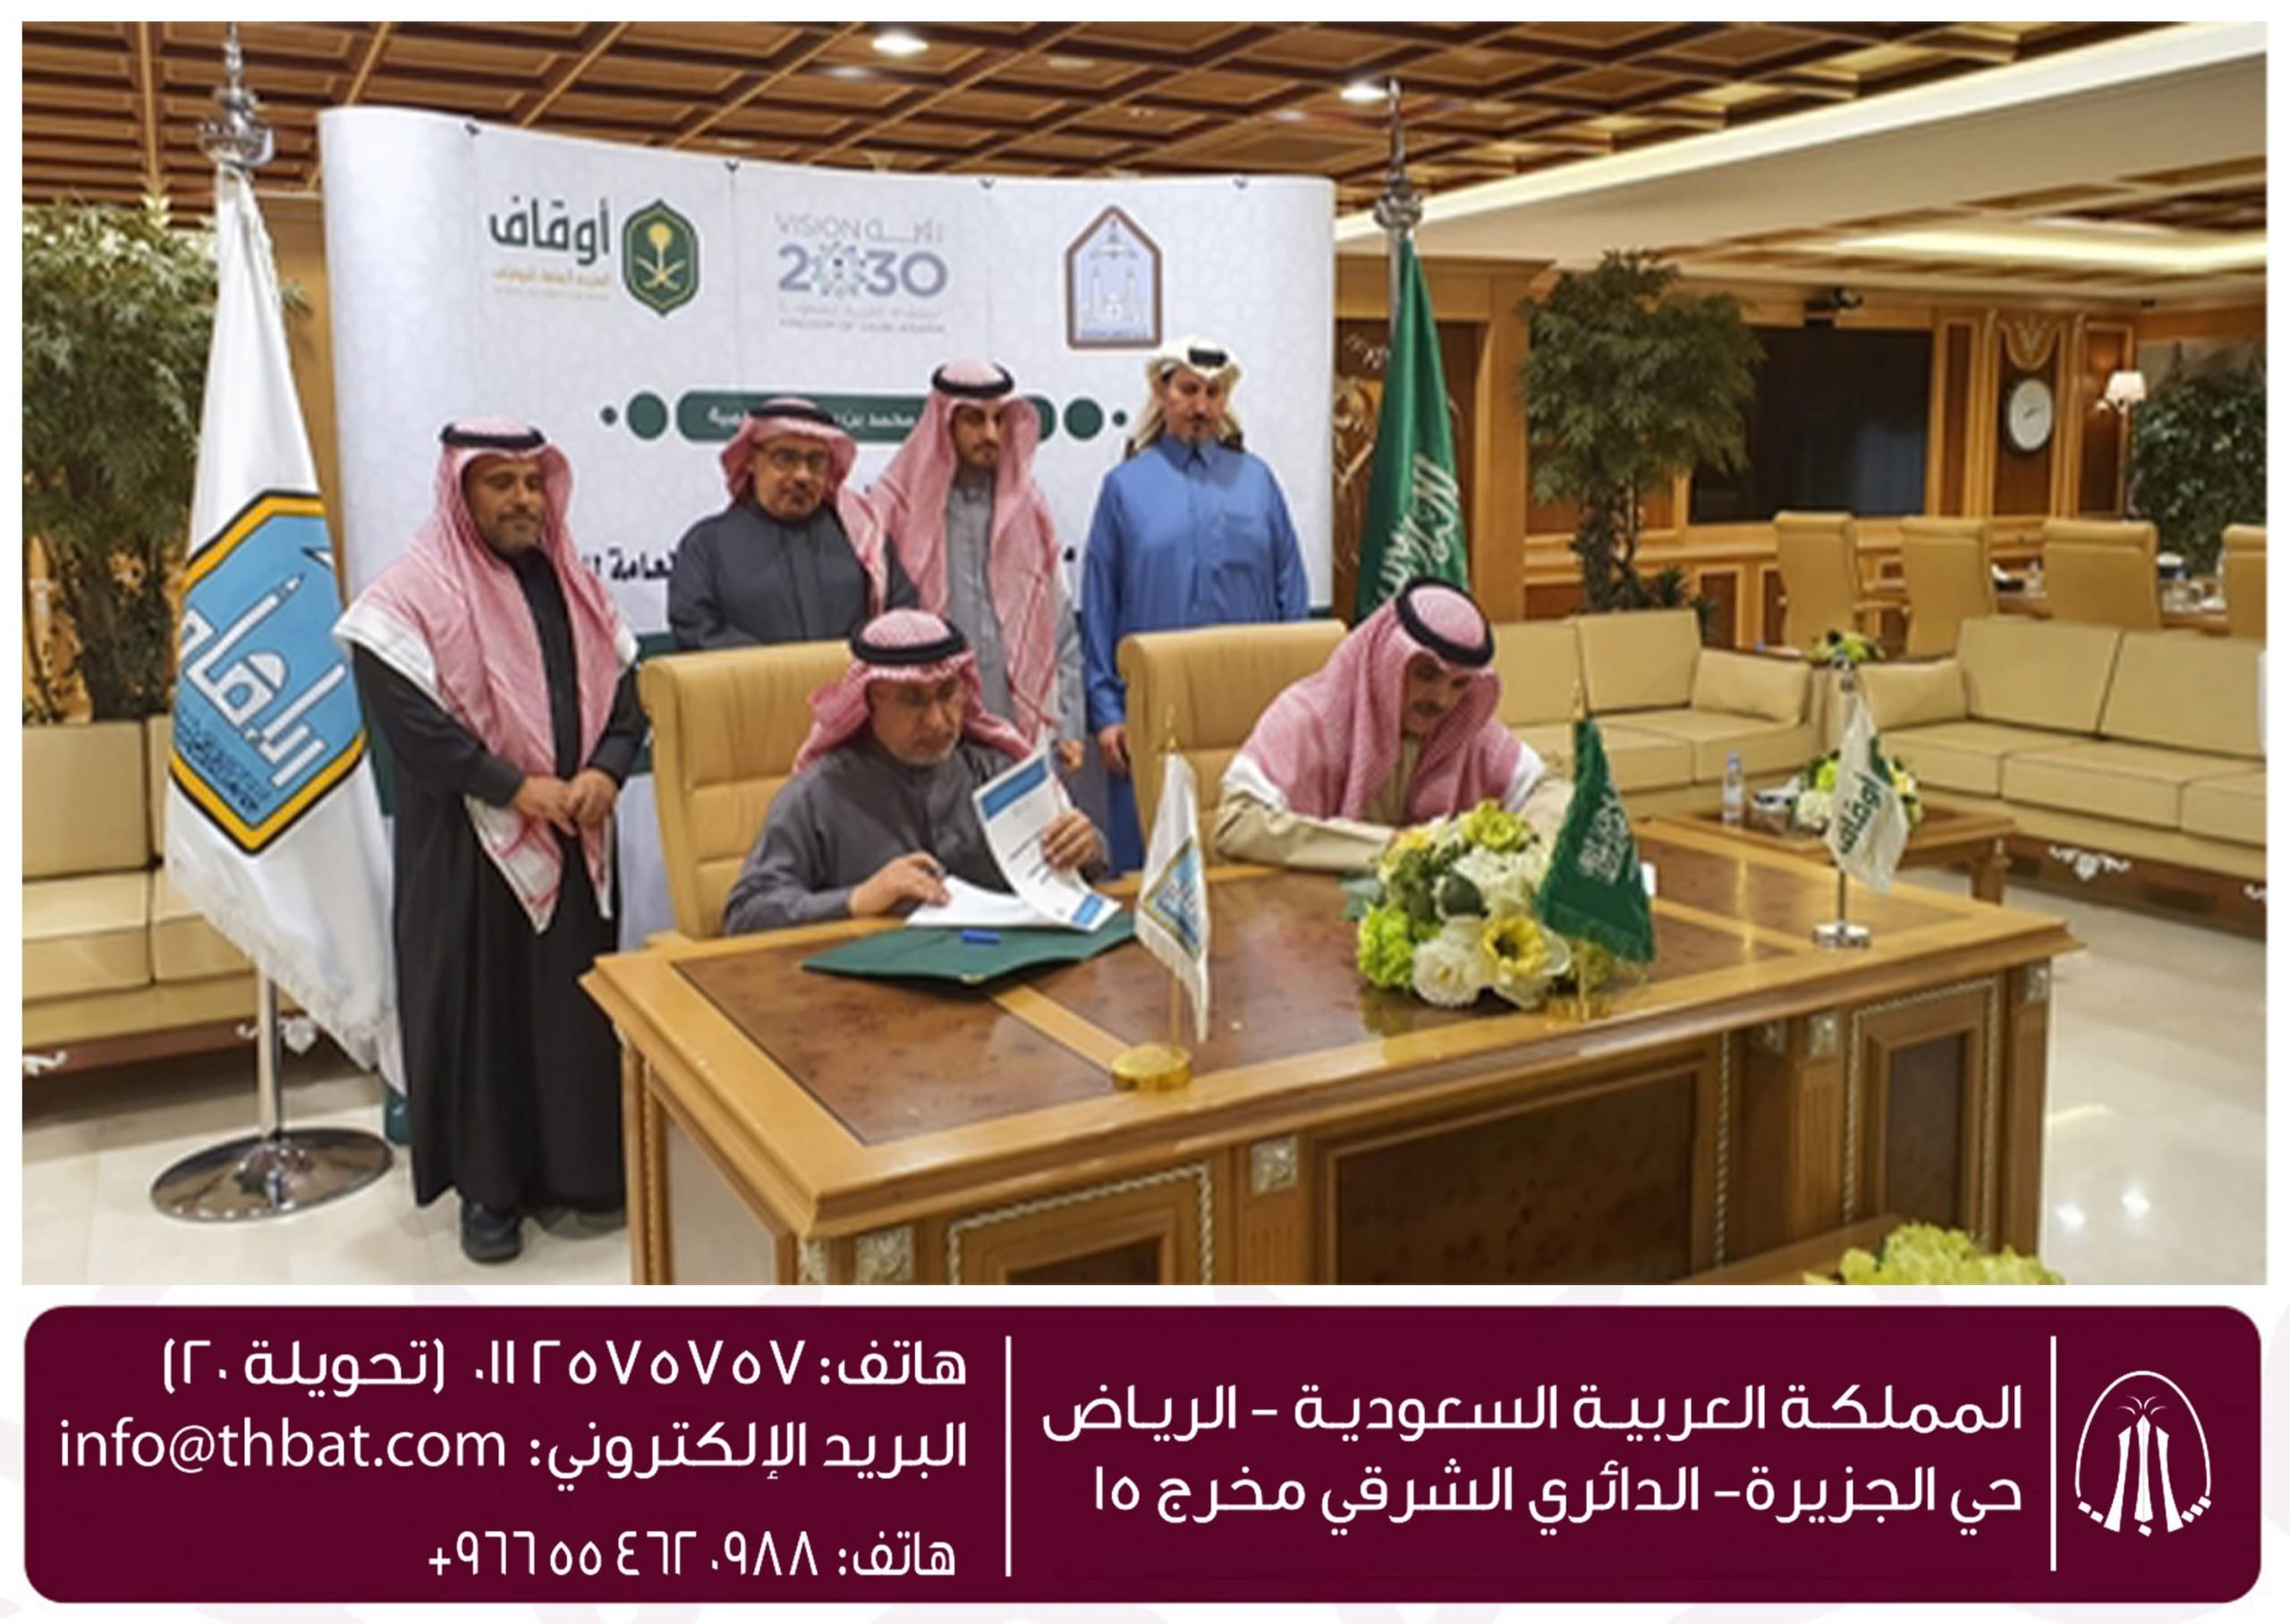 الهيئة العامة للأوقاف توقع مذكرة تعاون مع جامعة الإمام محمد بن سعود الإسلامية